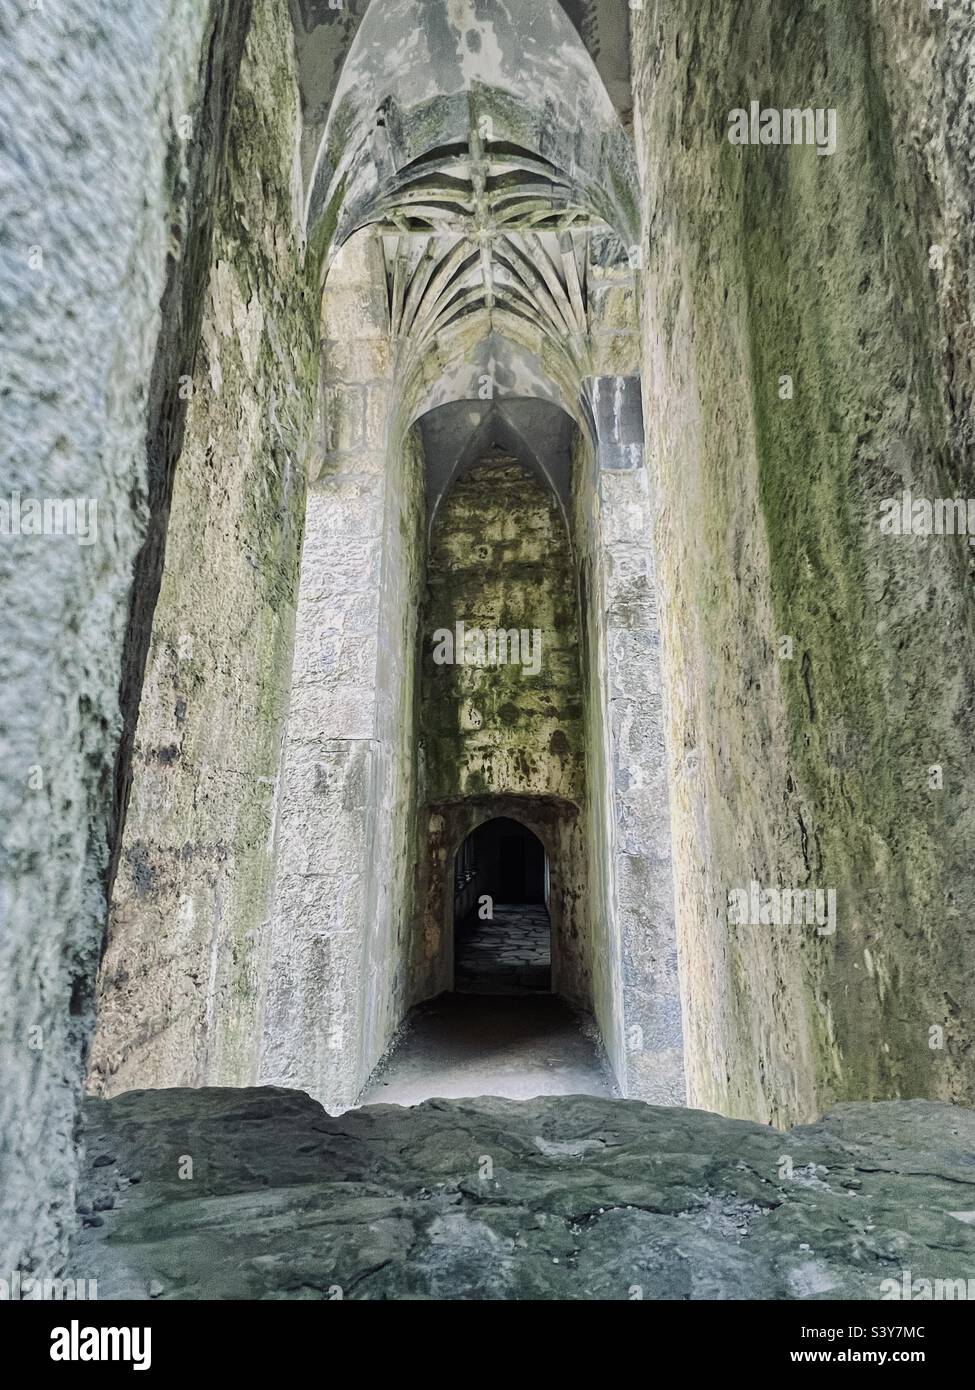 Abandoned Muckross abbey, Ireland Stock Photo